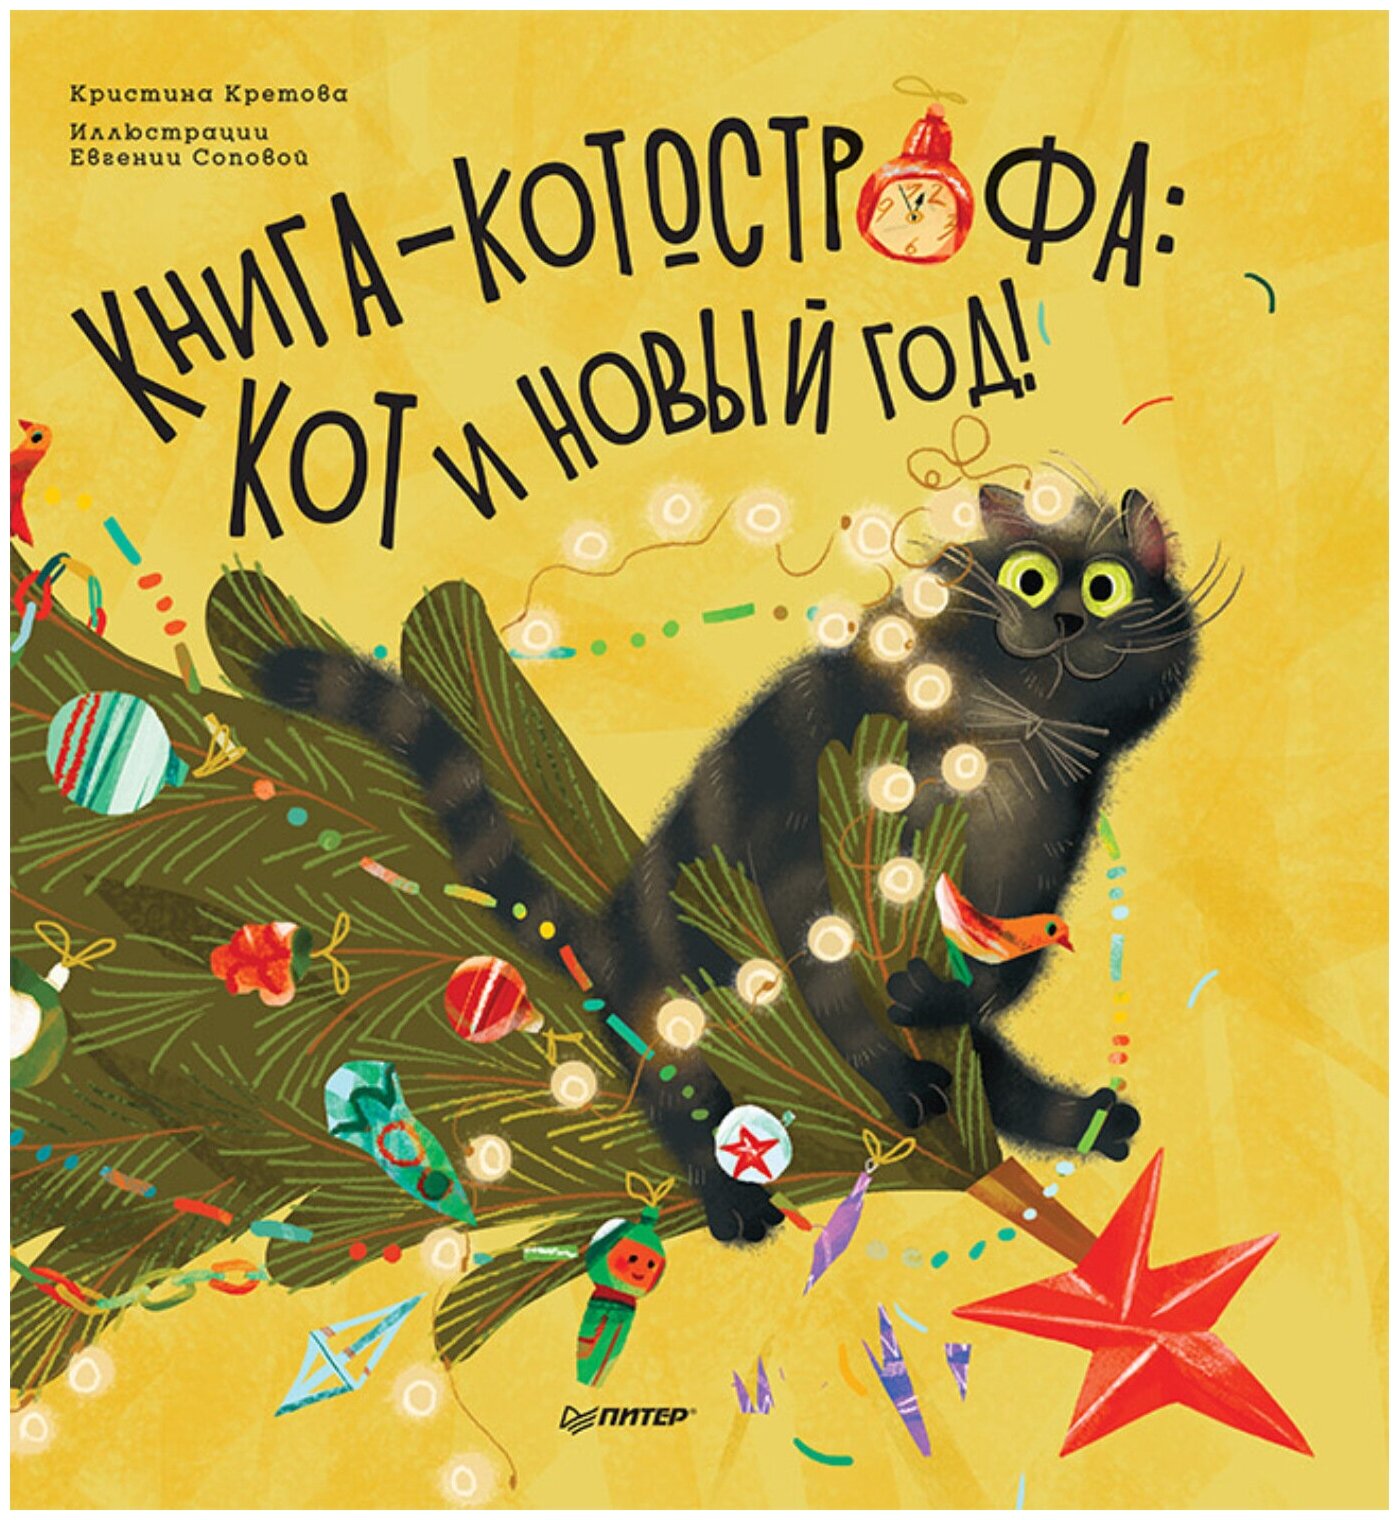 Книга-котострофа: Кот и Новый год! Полезные сказки. Кретова К, Сопова Е. Новогодние подарки и поделки